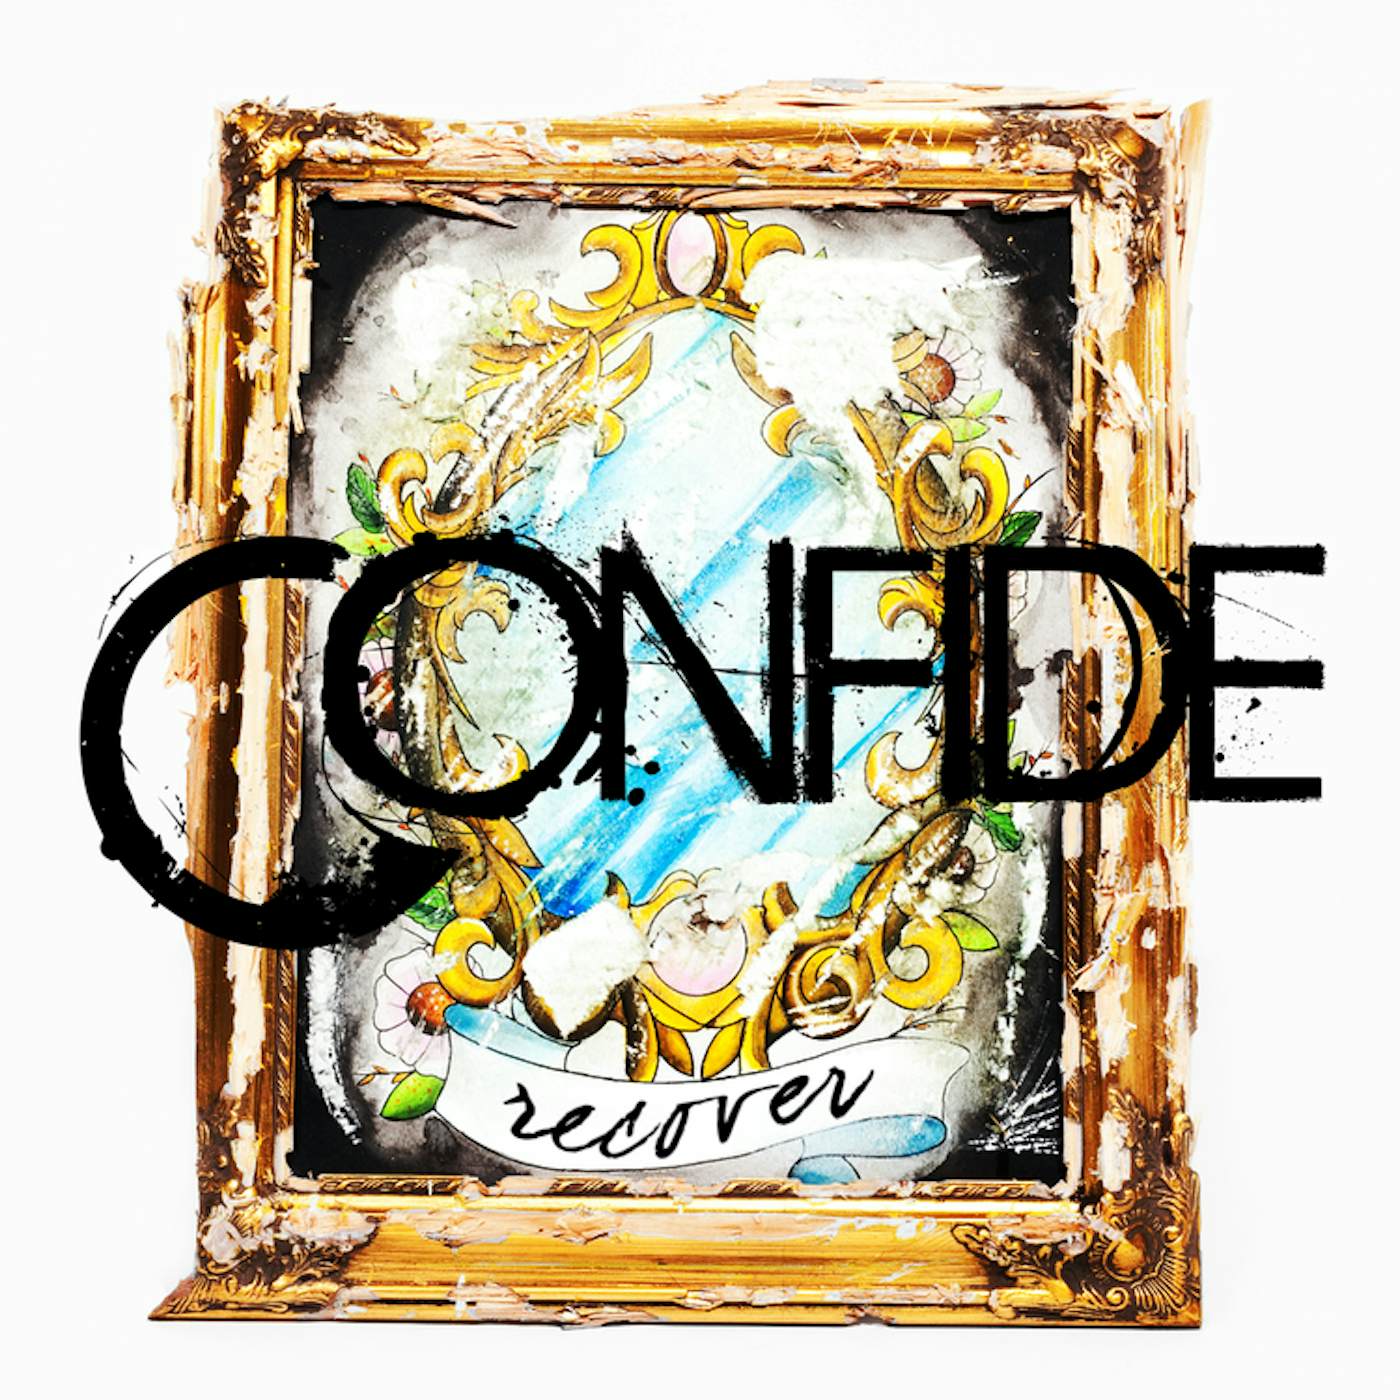 Confide Recover (Limited Edition Random Colored) Vinyl Record